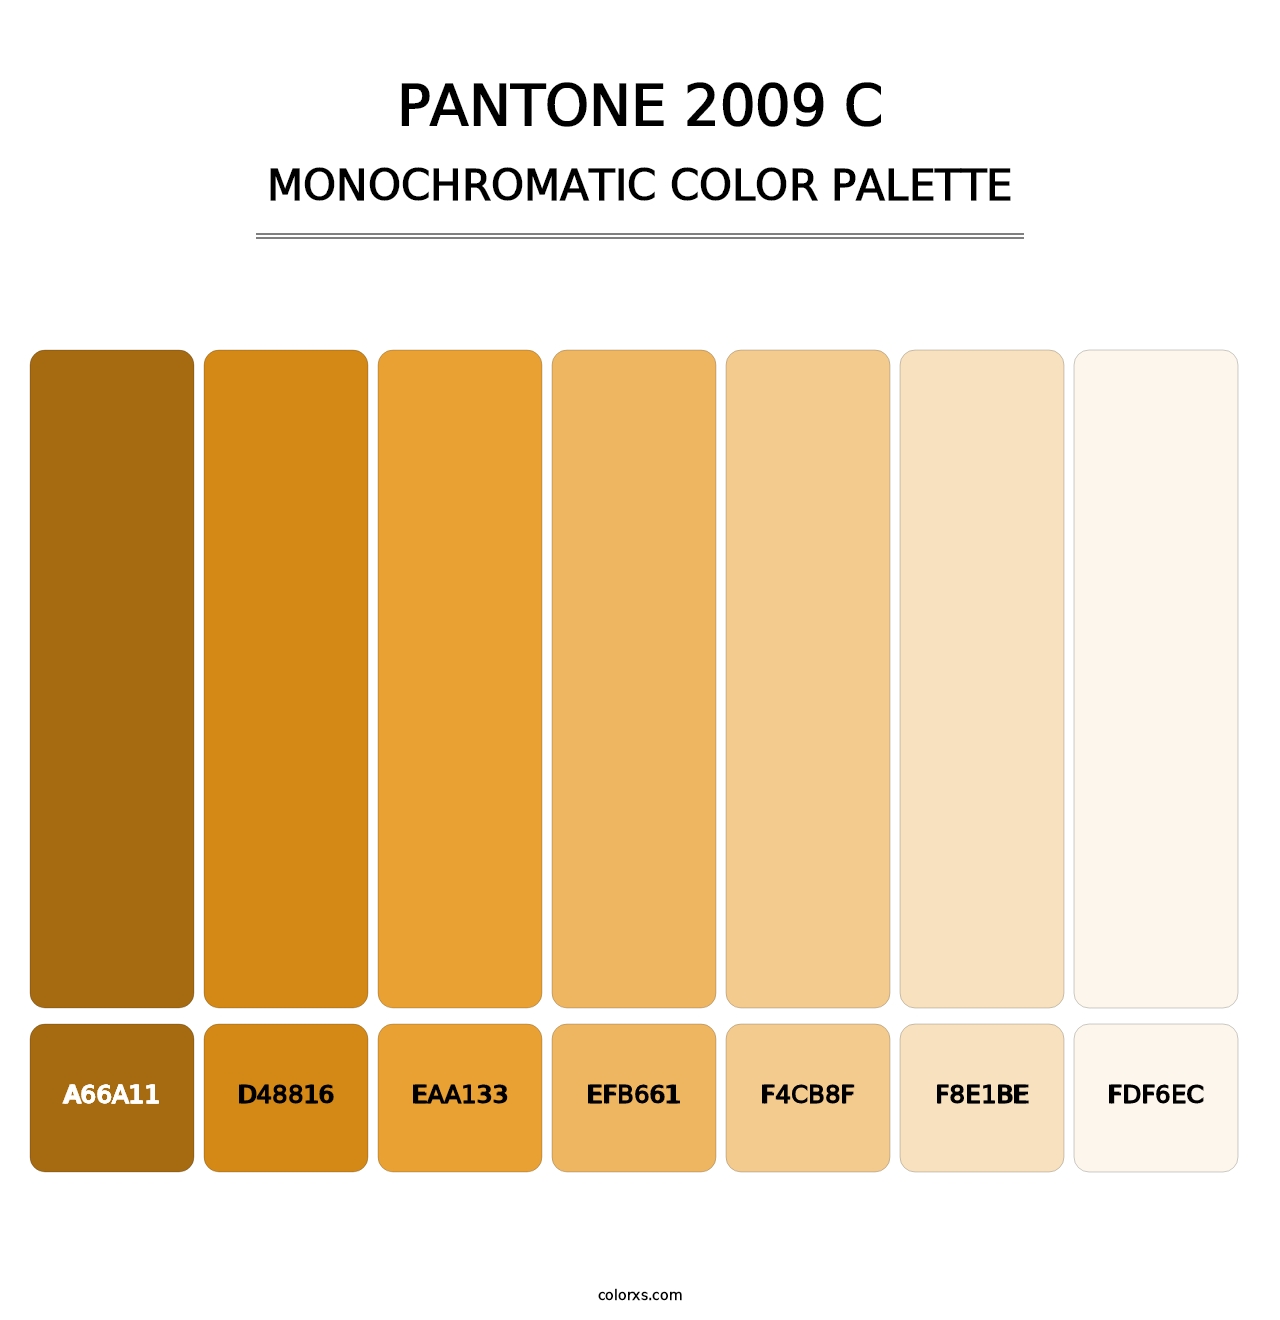 PANTONE 2009 C - Monochromatic Color Palette